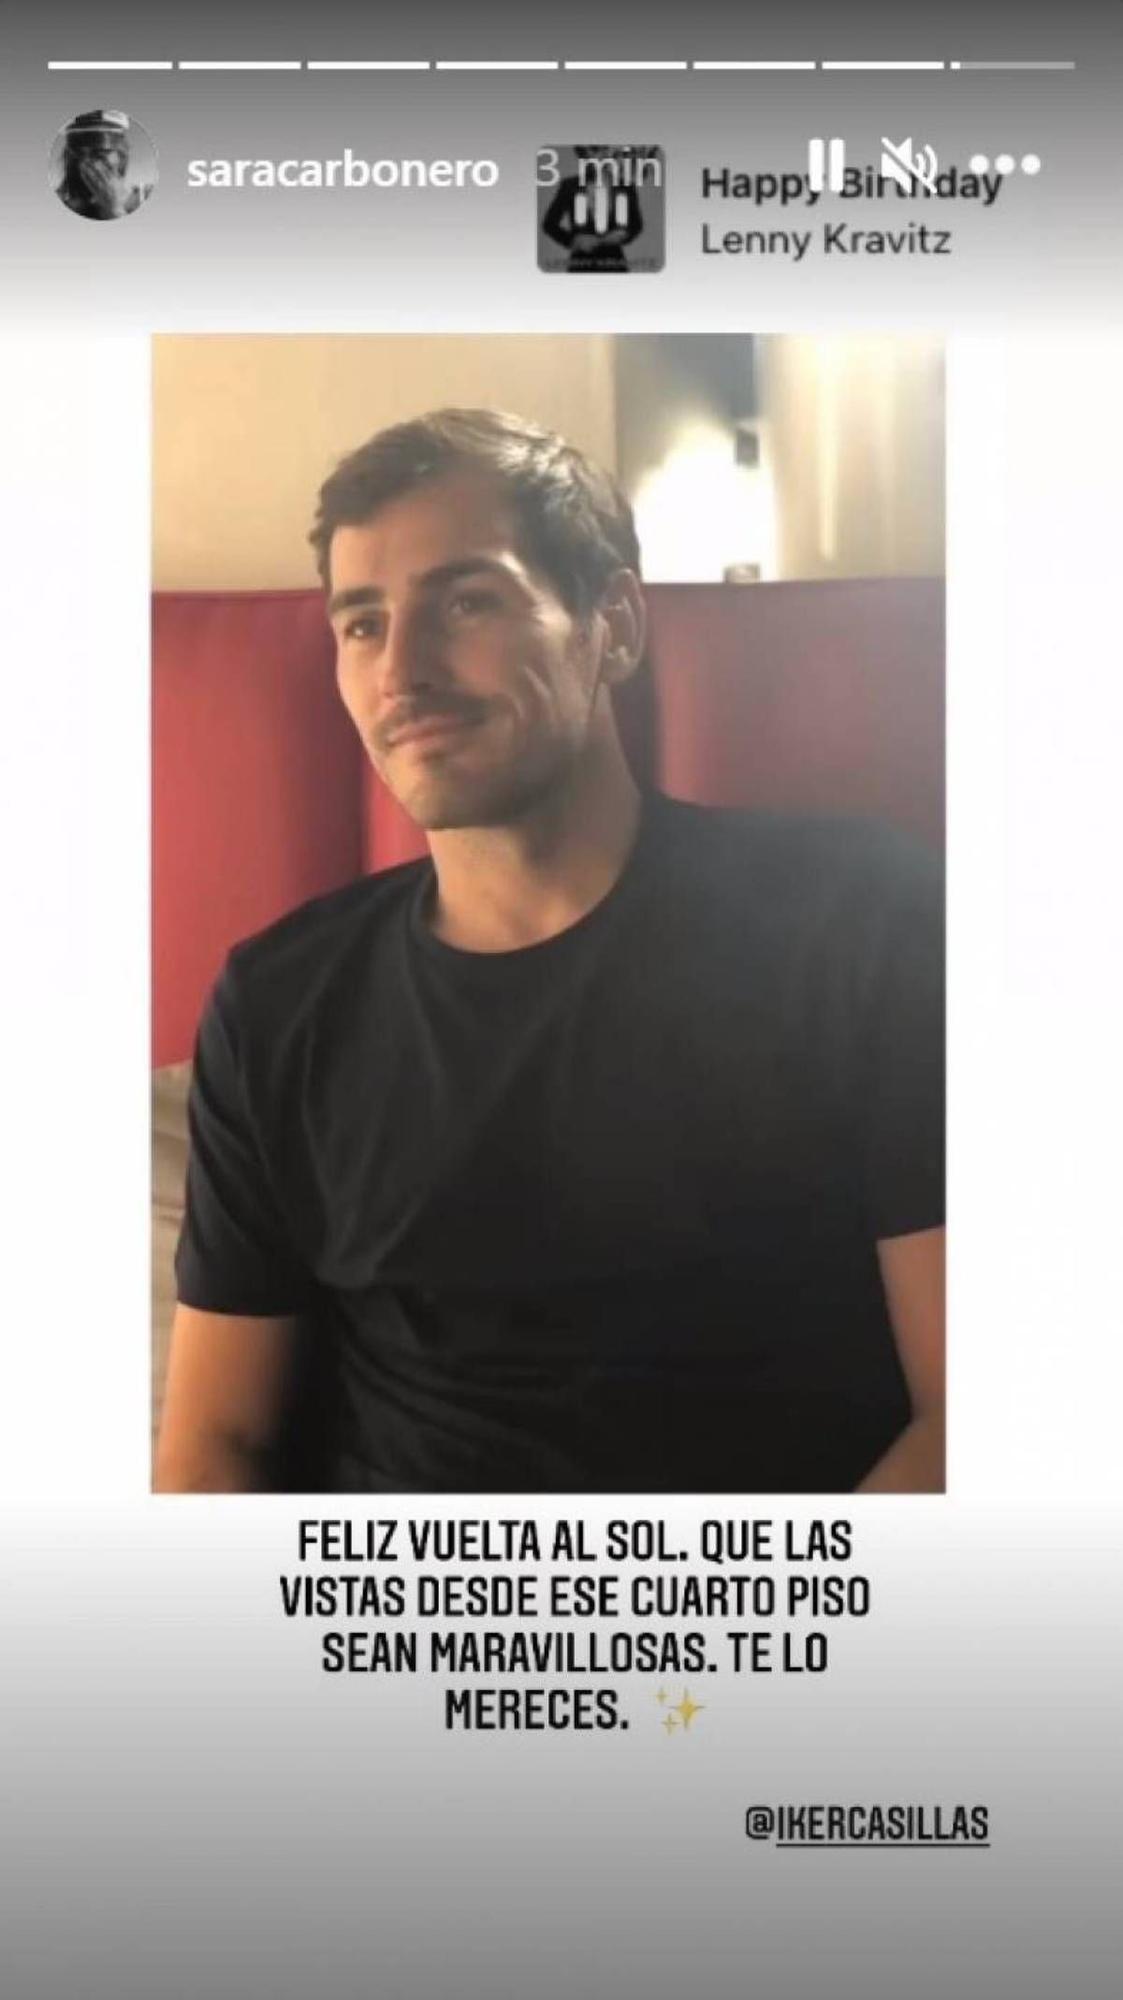 Felicitación de Sara Carbonero a Iker Casillas por su cumpleaños